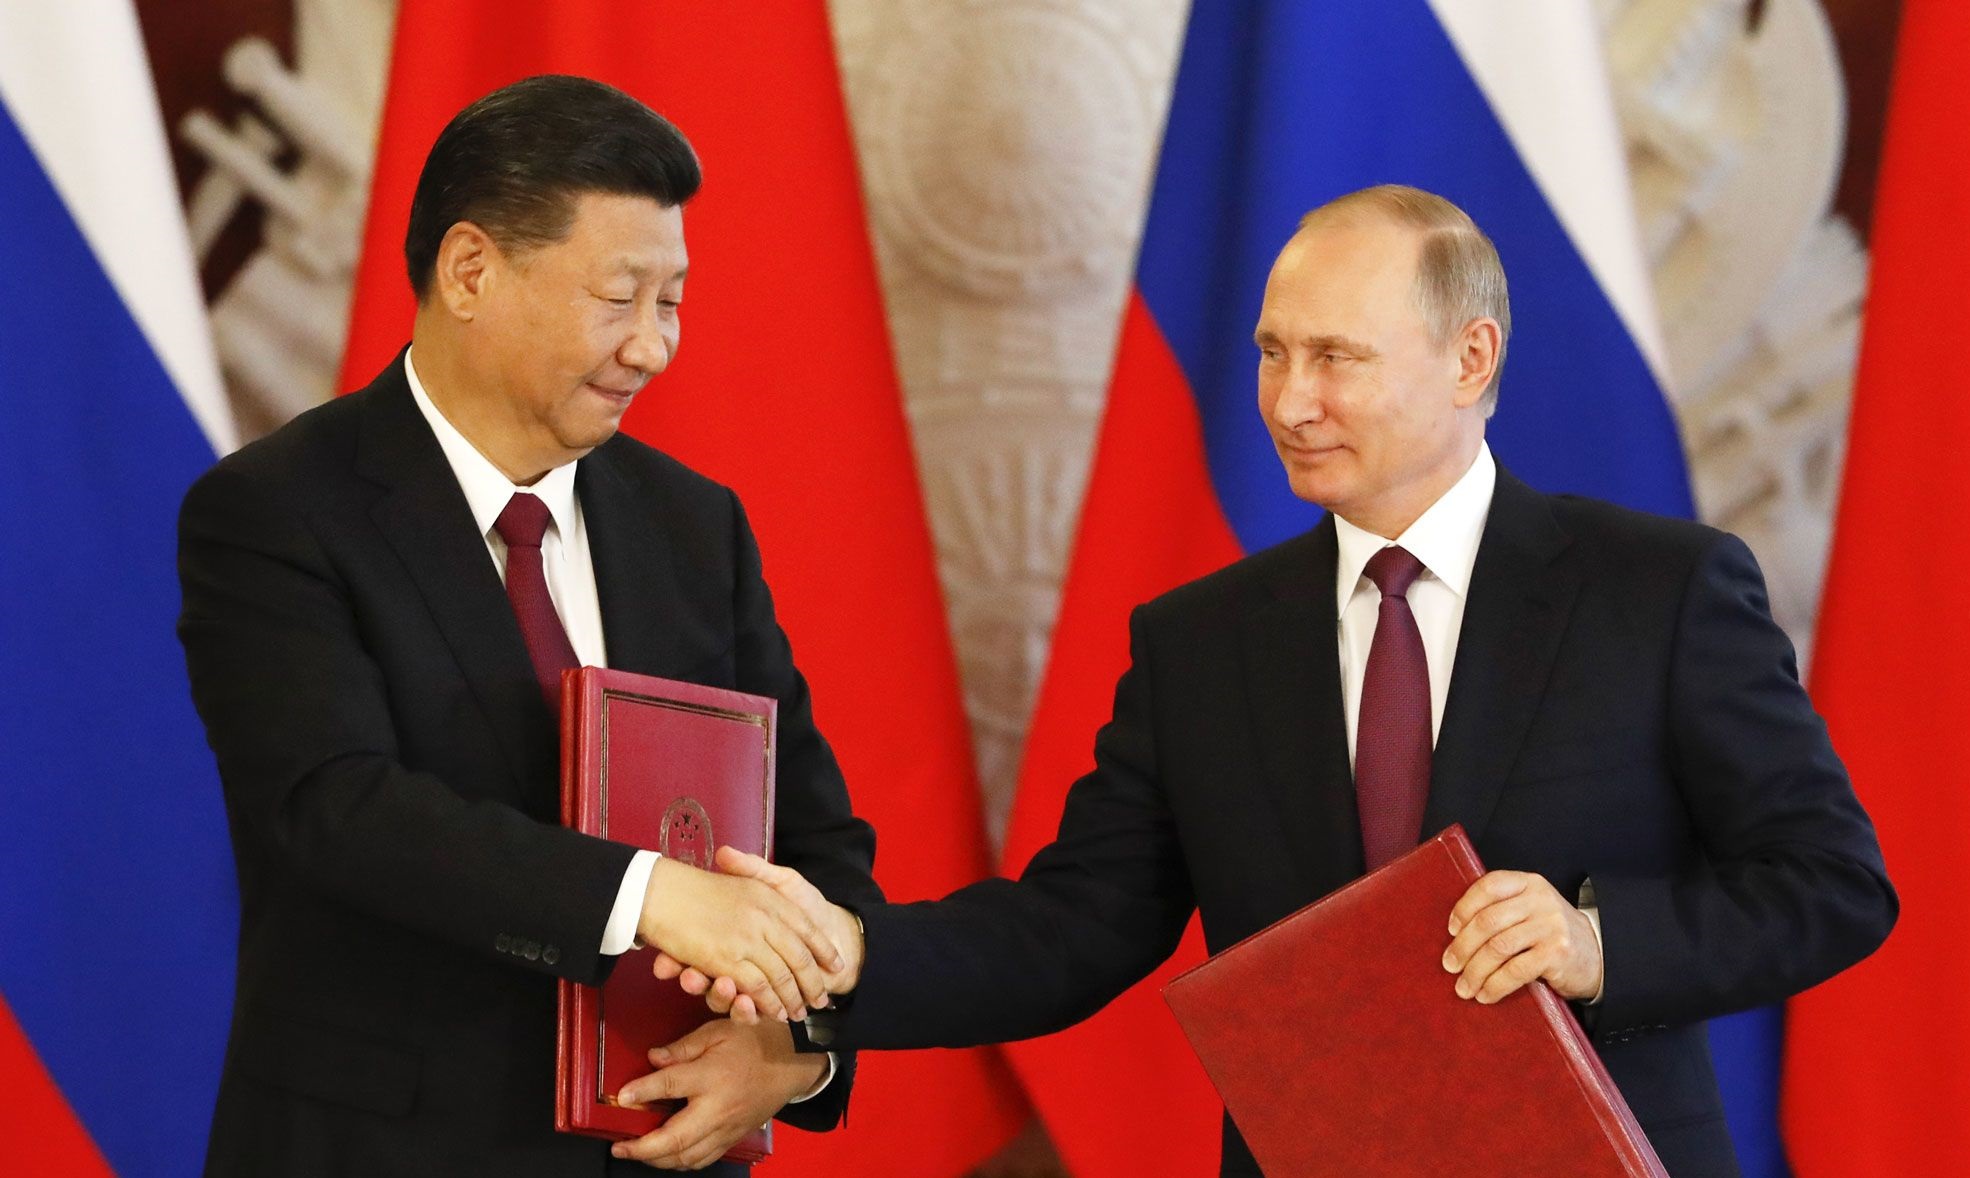 Ρωσία και Κίνα «μπλοκάρουν» την Συμφωνία των Πρεσπών: Συγκαλούν το Συμβούλιο Ασφαλείας και ζητούν την ακύρωσή της!